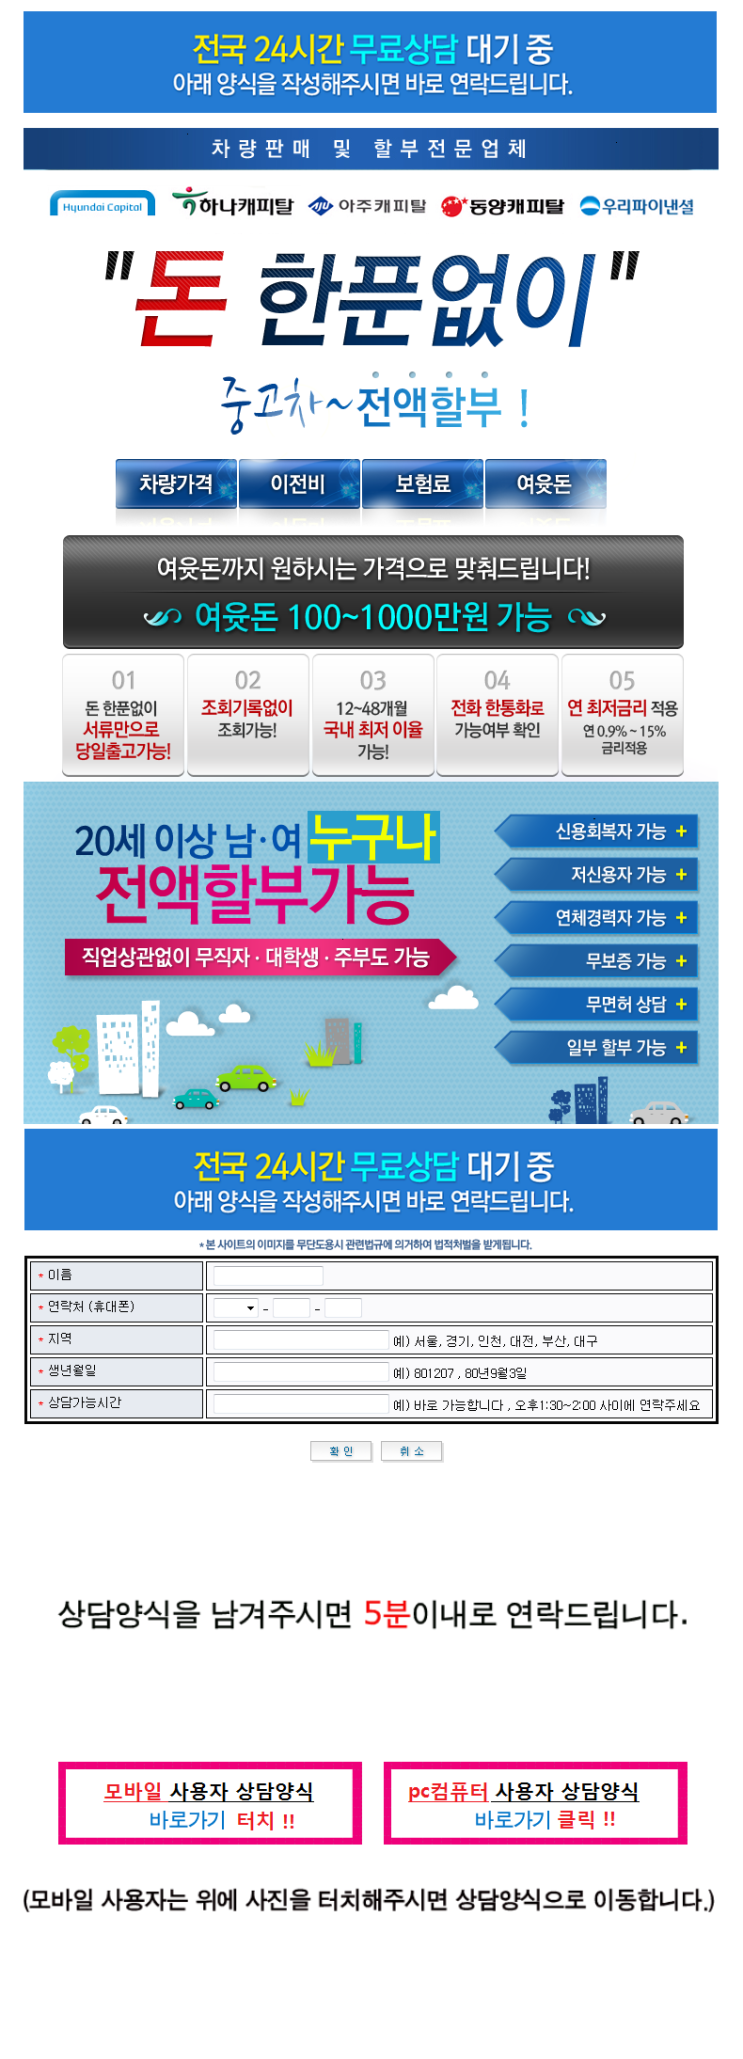 성북구 강서 영등포구 중고차량 매매 중고자동치 직거래 사이트